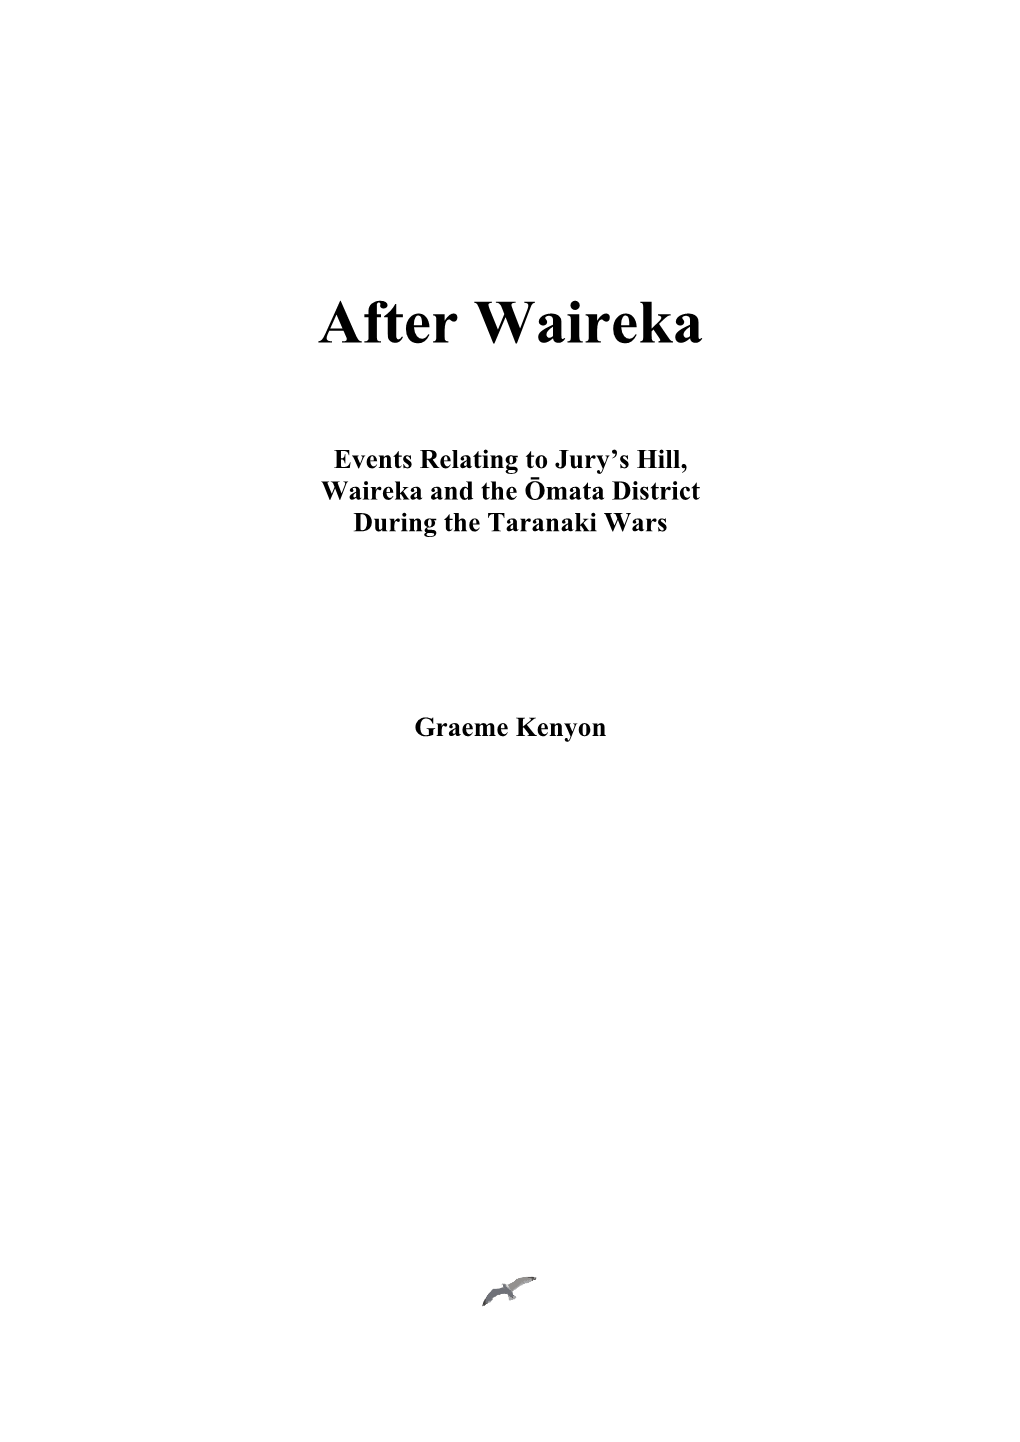 After Waireka